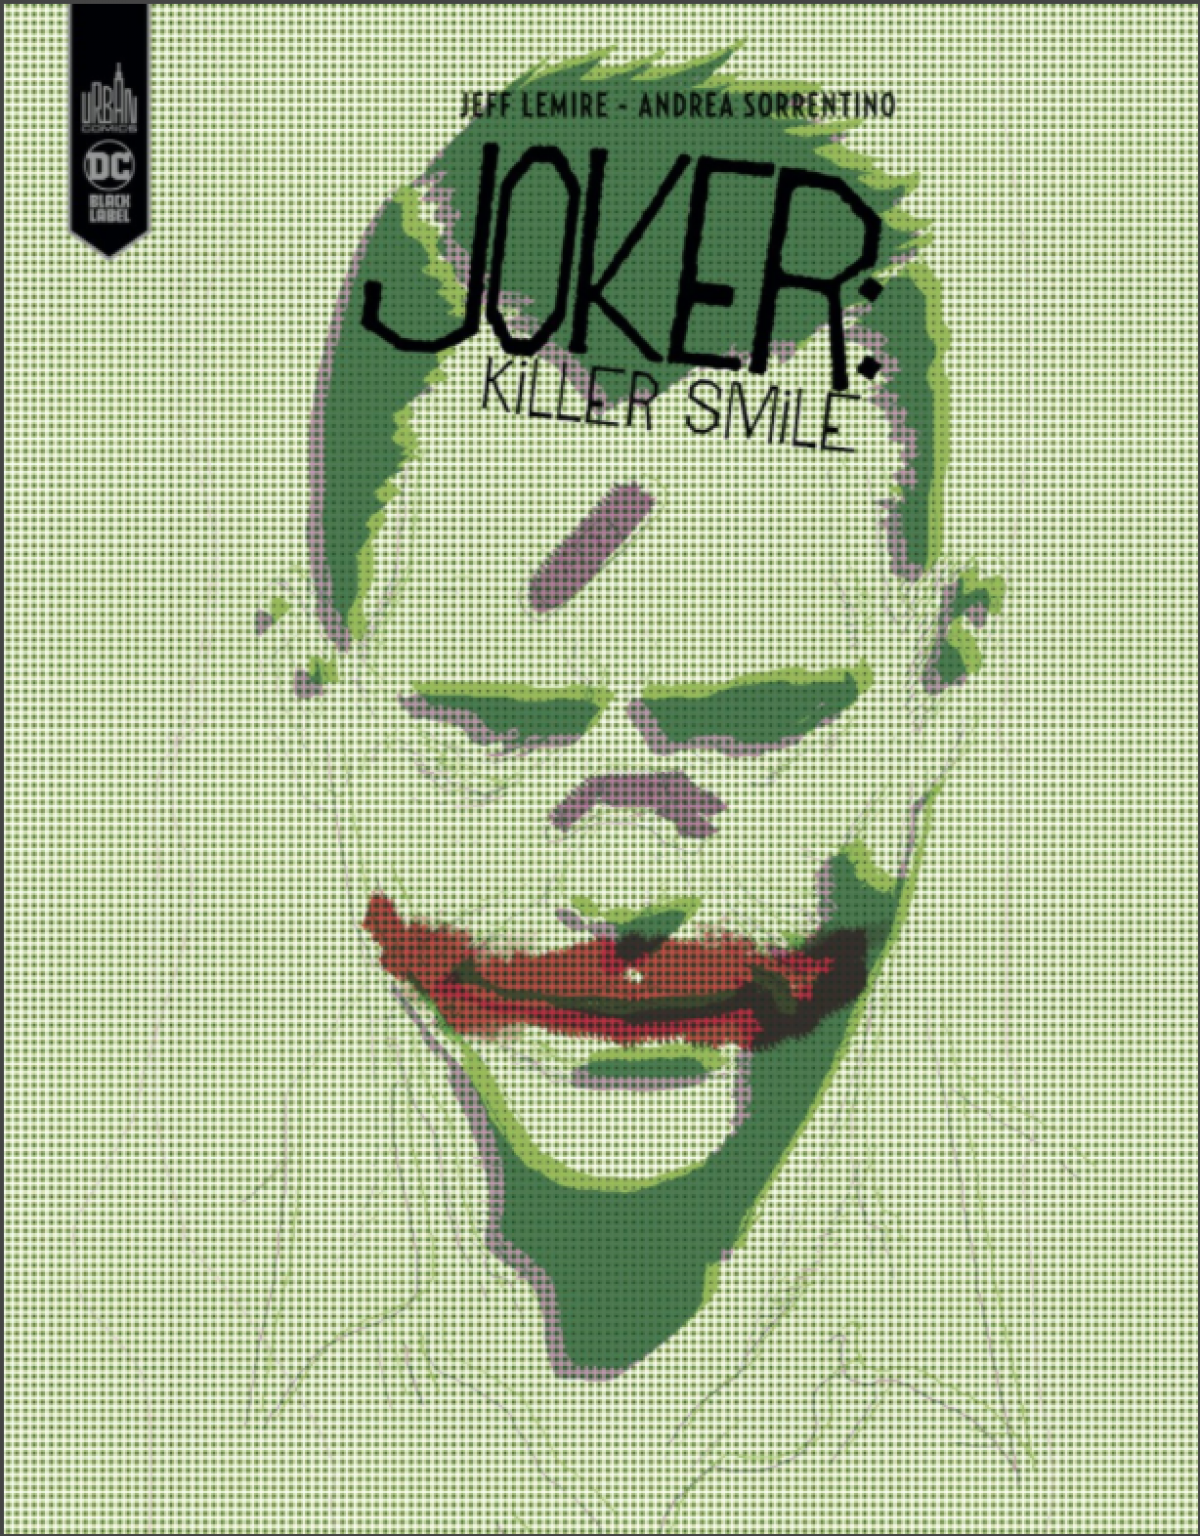 Joker Killer smile - Jeff Lemire et Andrea Sorrentino (Urban Comics)